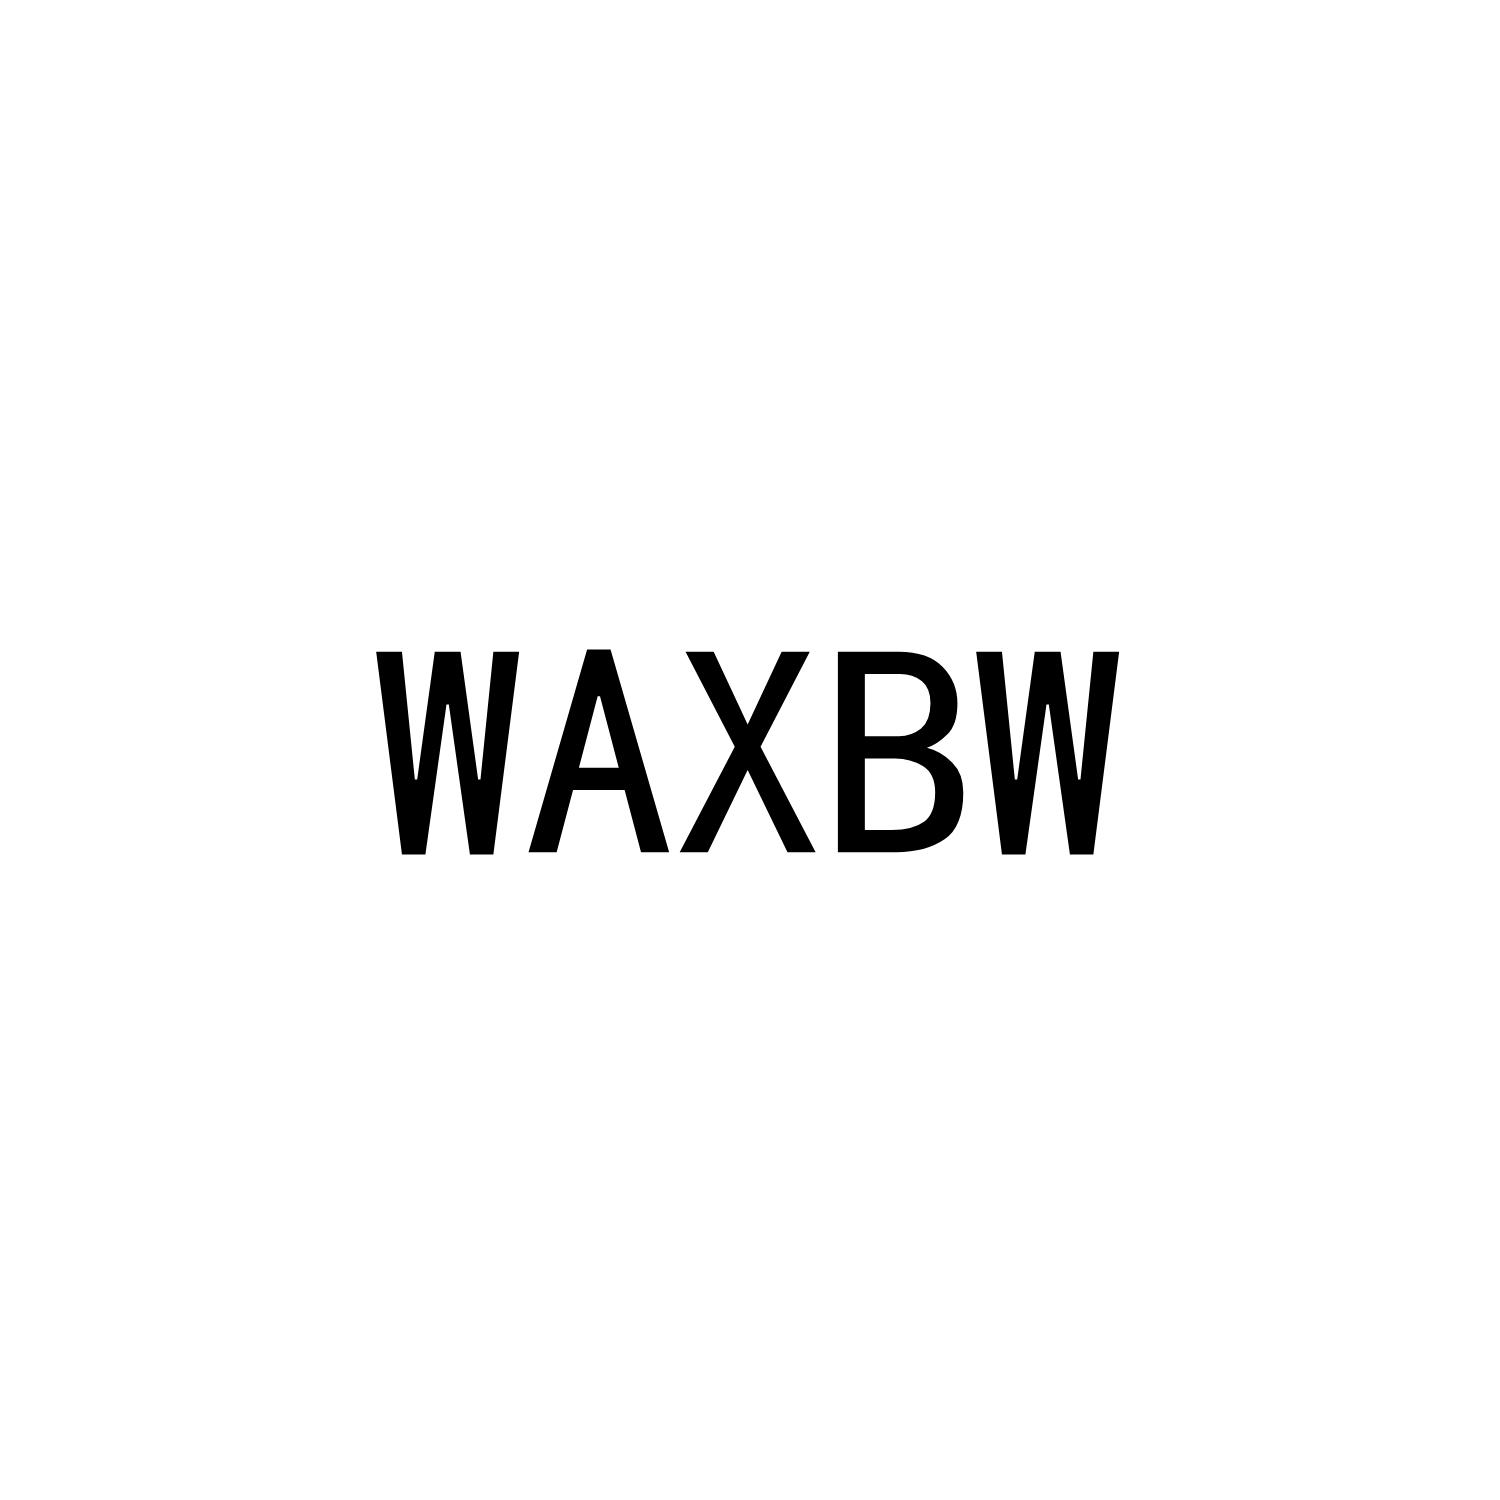 WAXBW